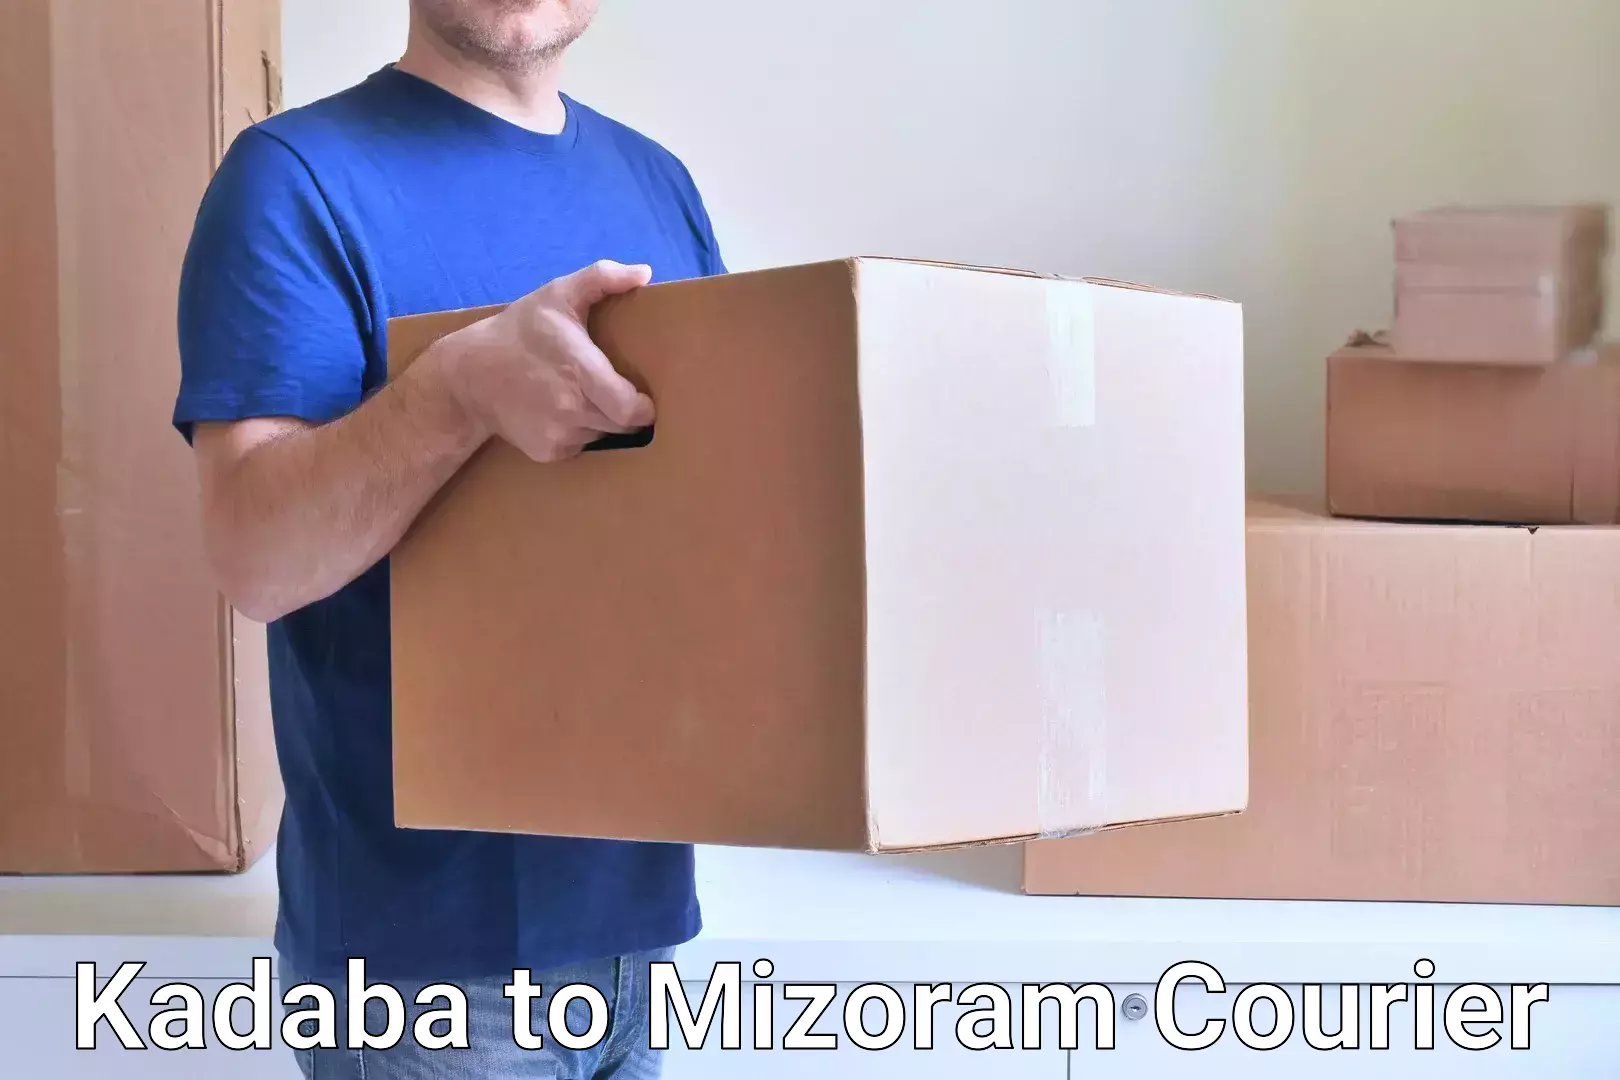 24/7 courier service Kadaba to Siaha